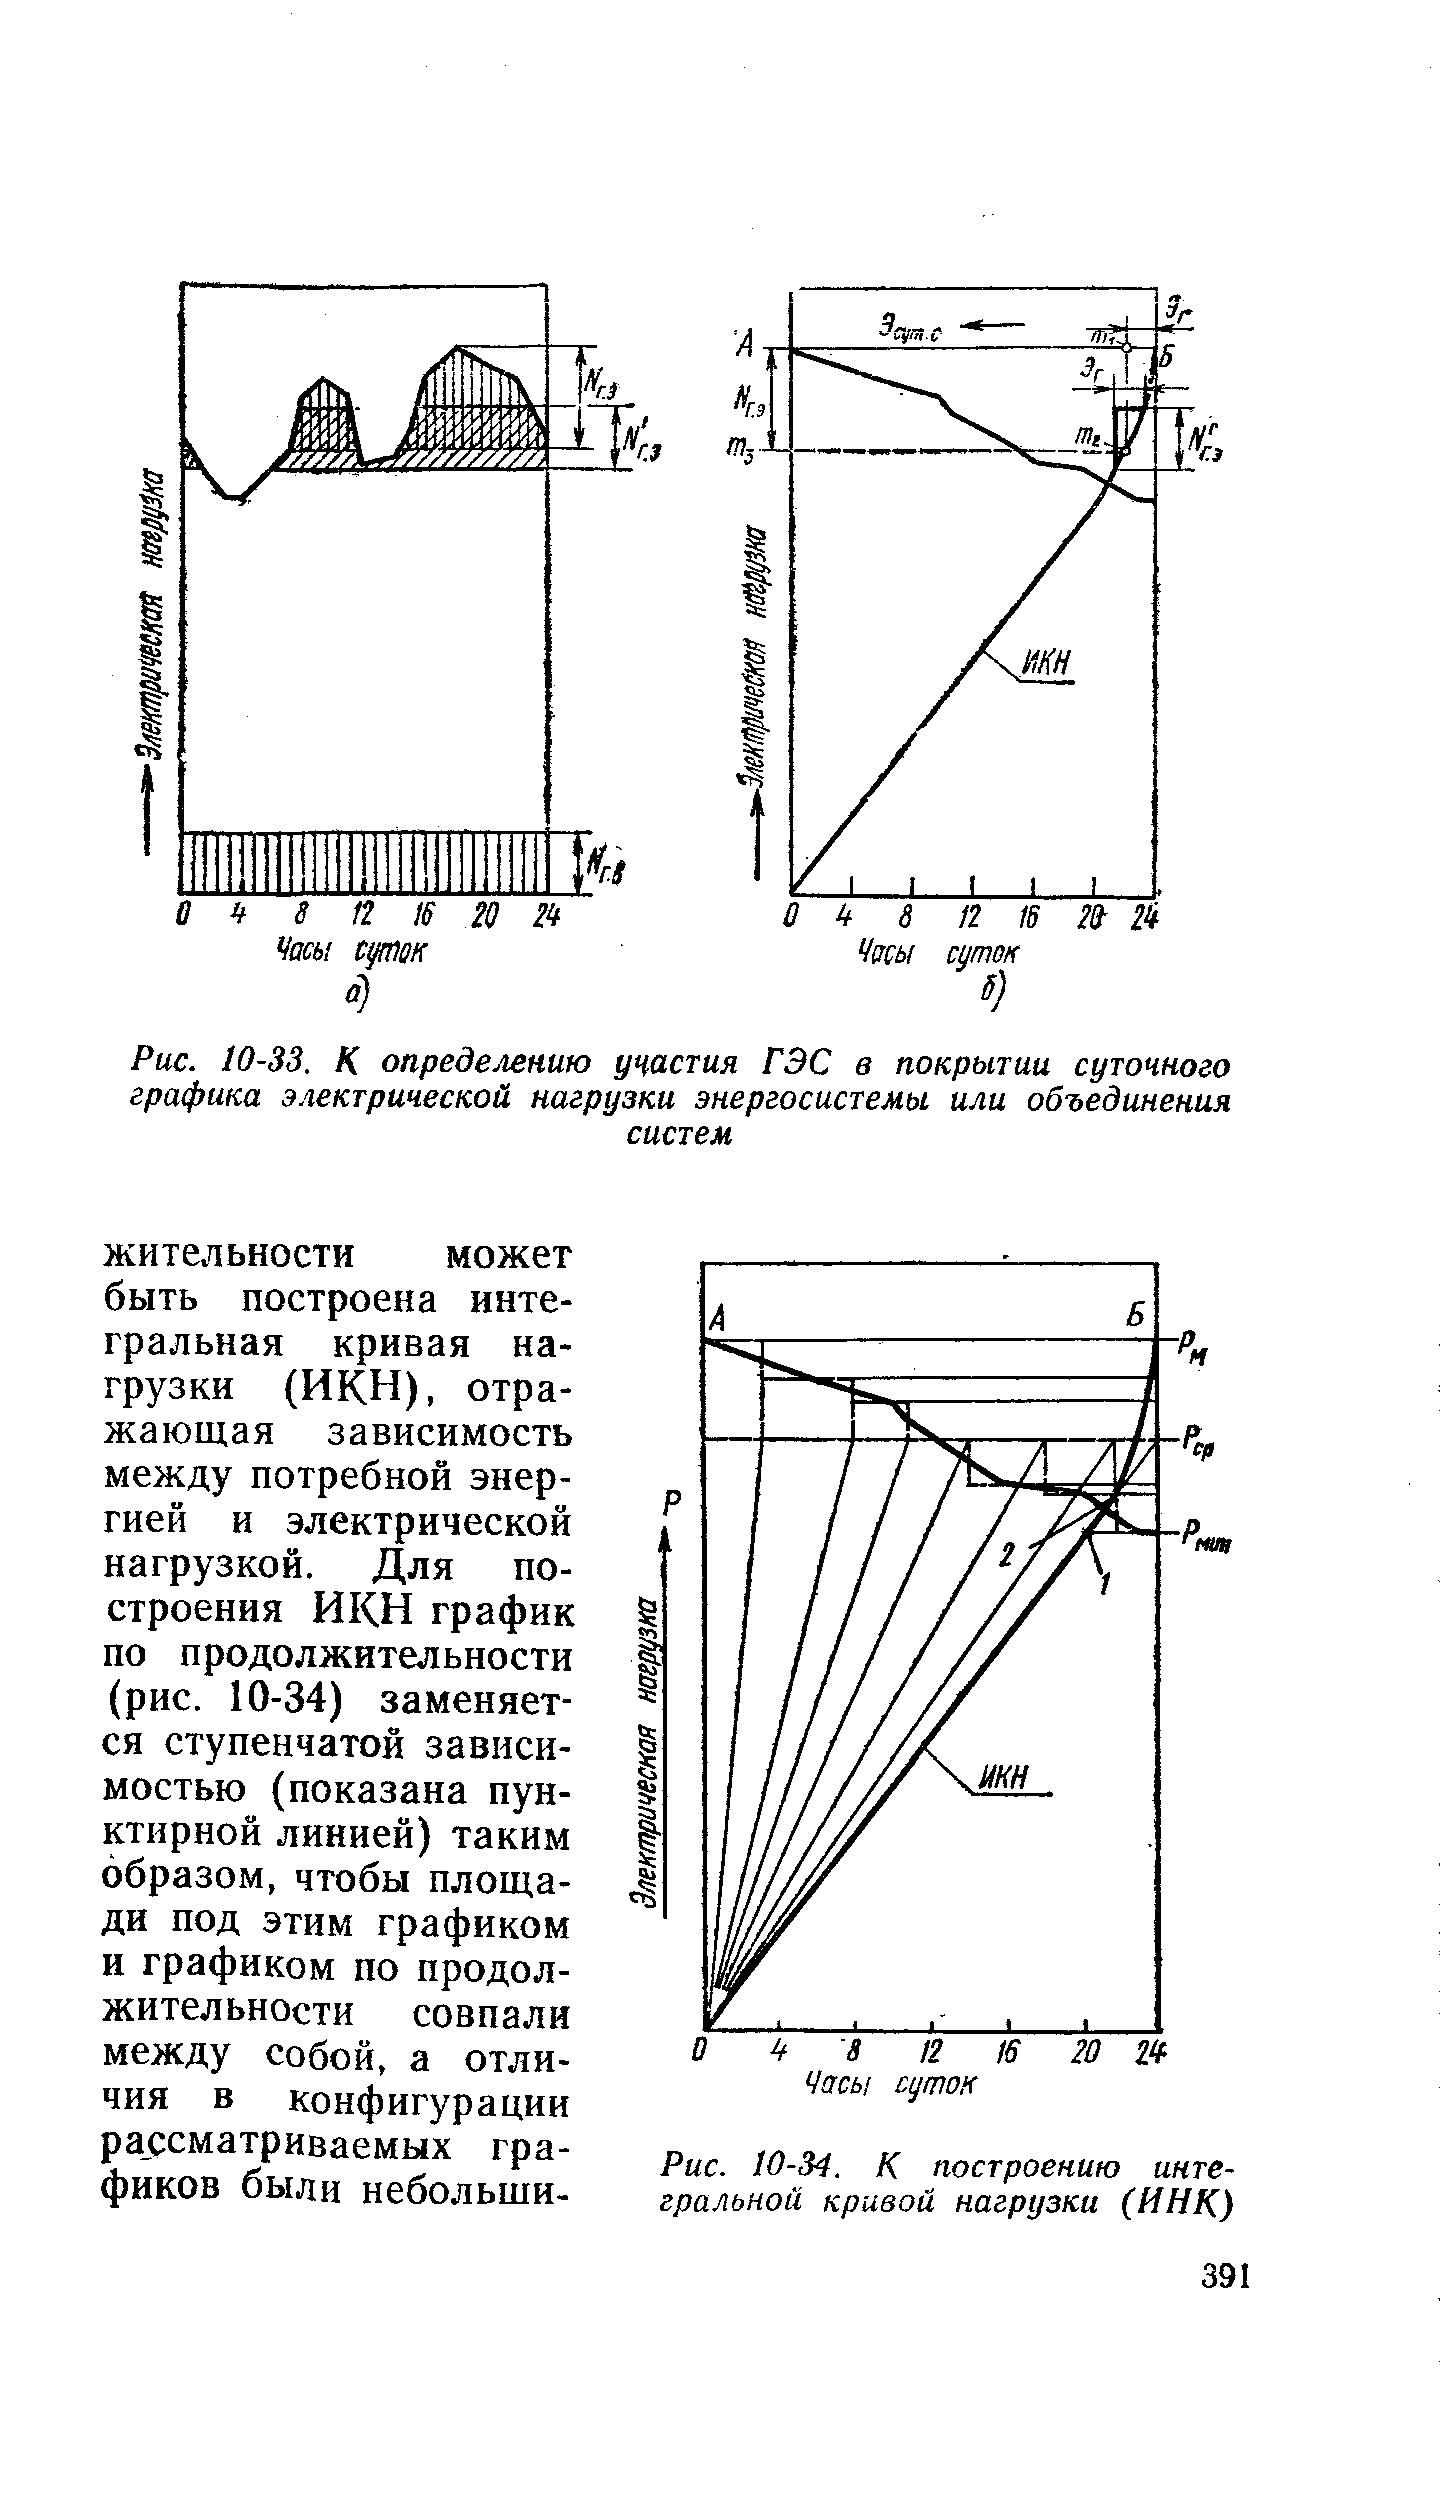 Рис. 10-34. К построению интегральной кривой нагрузки (ИНК.)
